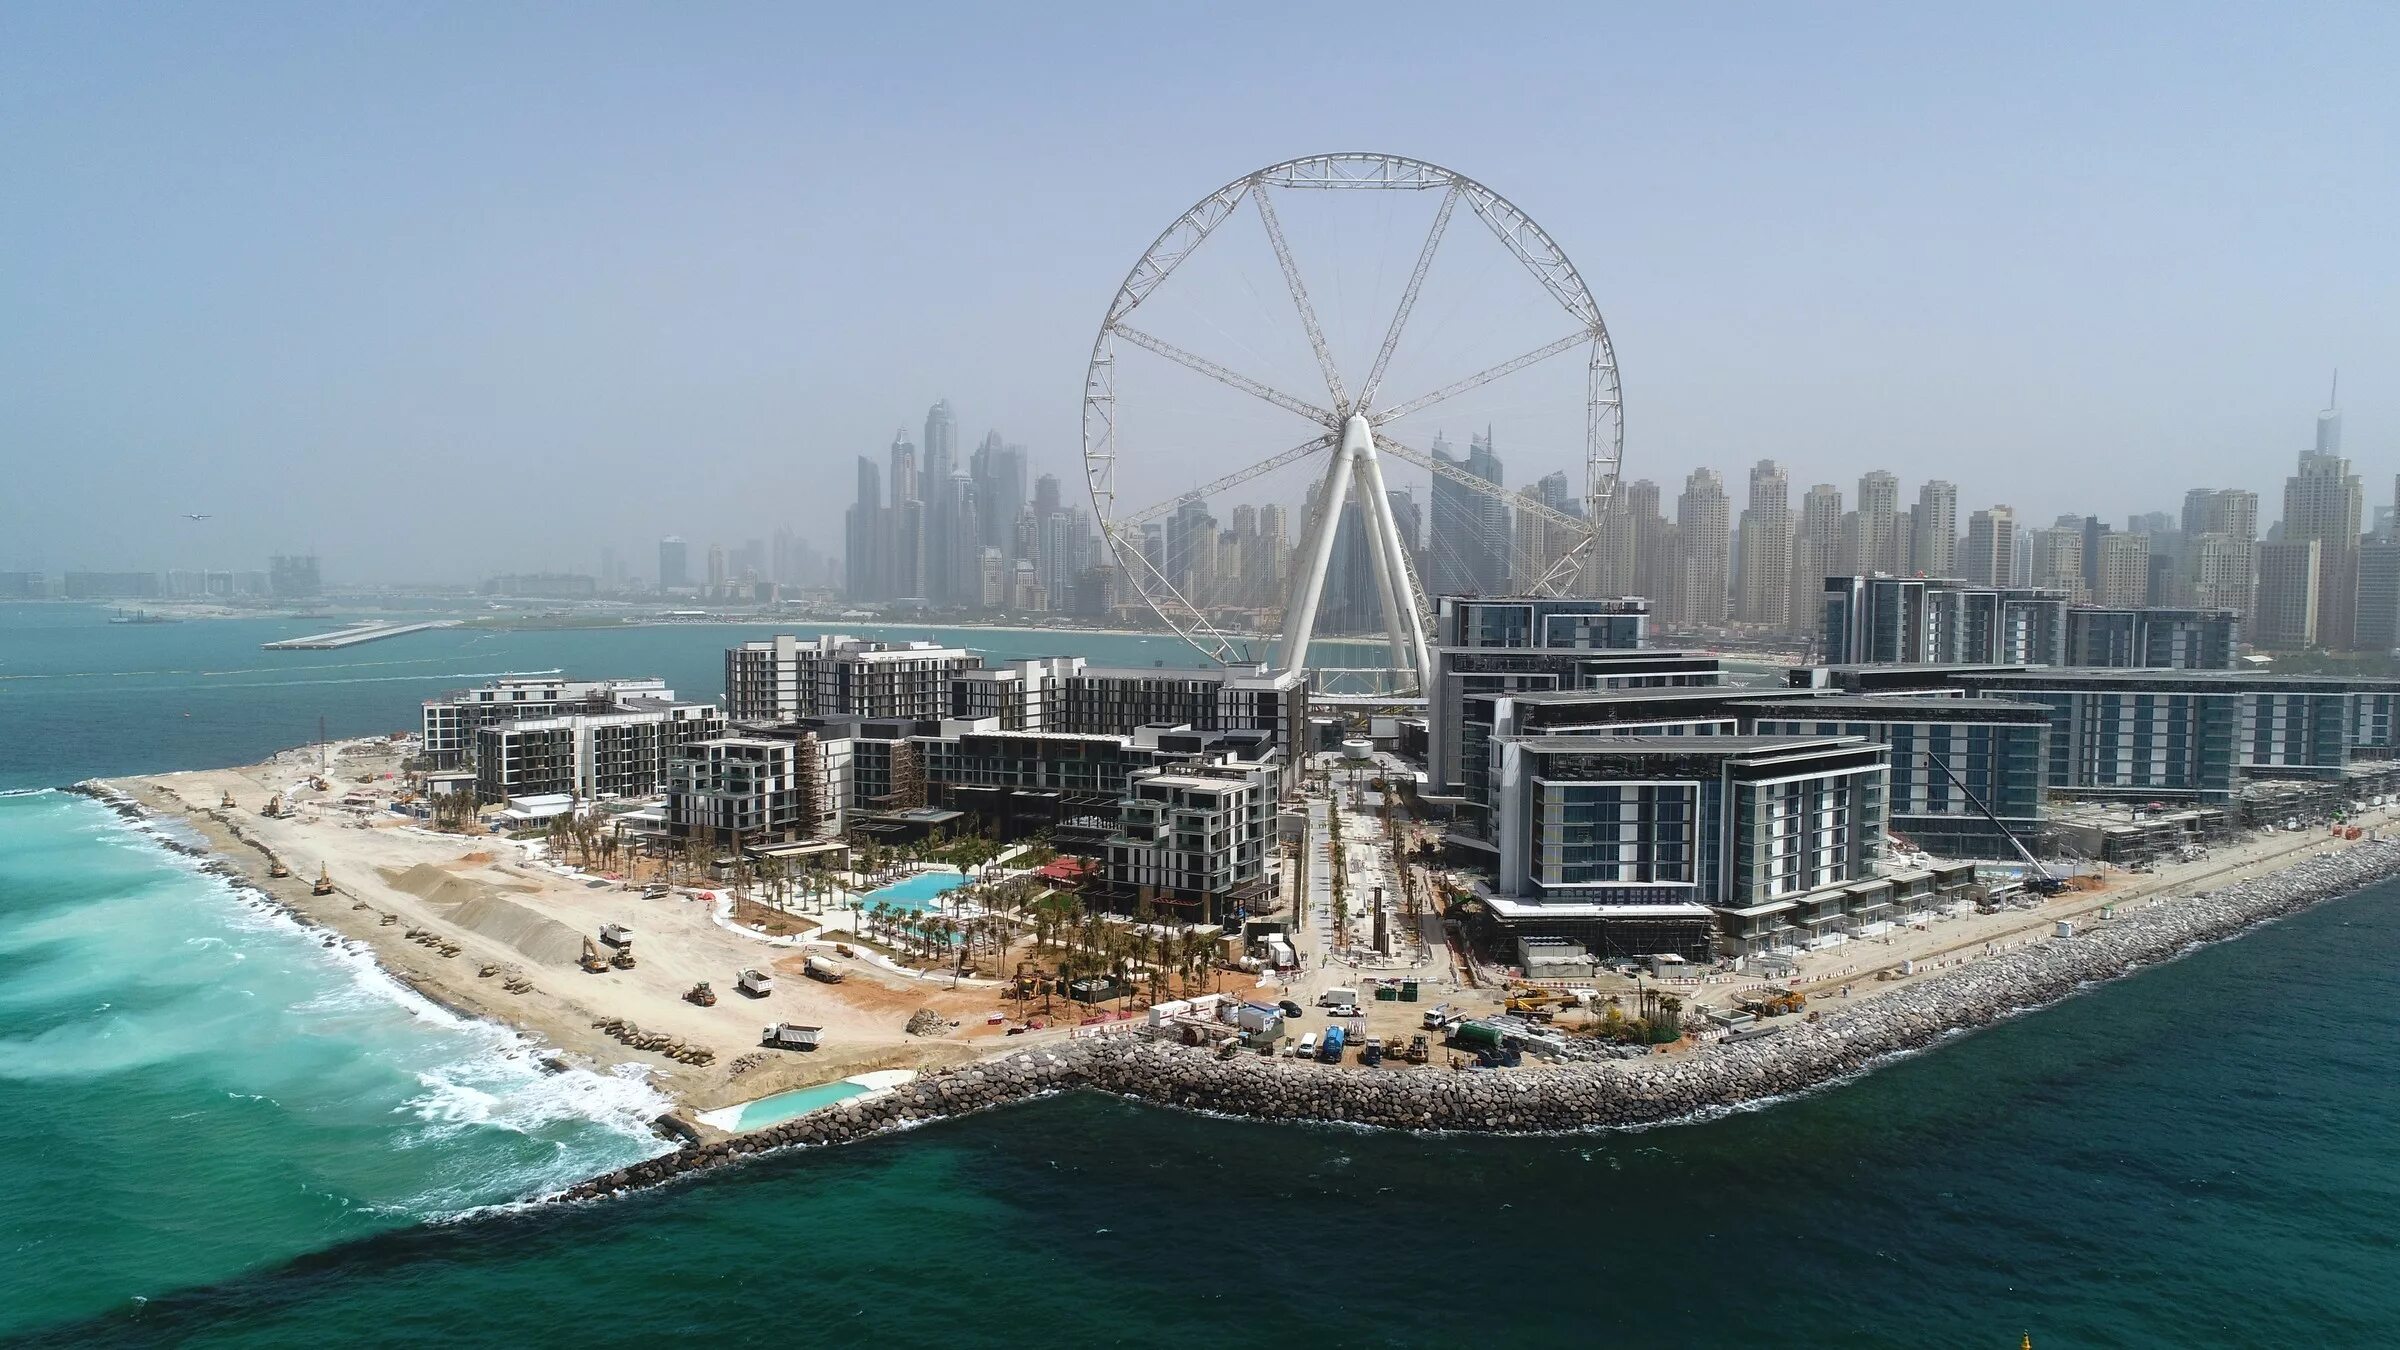 Самый большой округ в мире. Колесо обозрения Дубай Ain Dubai. Дубай колесо обозрения глаз Дубая. Bluewaters Island Dubai колесо обозрения.